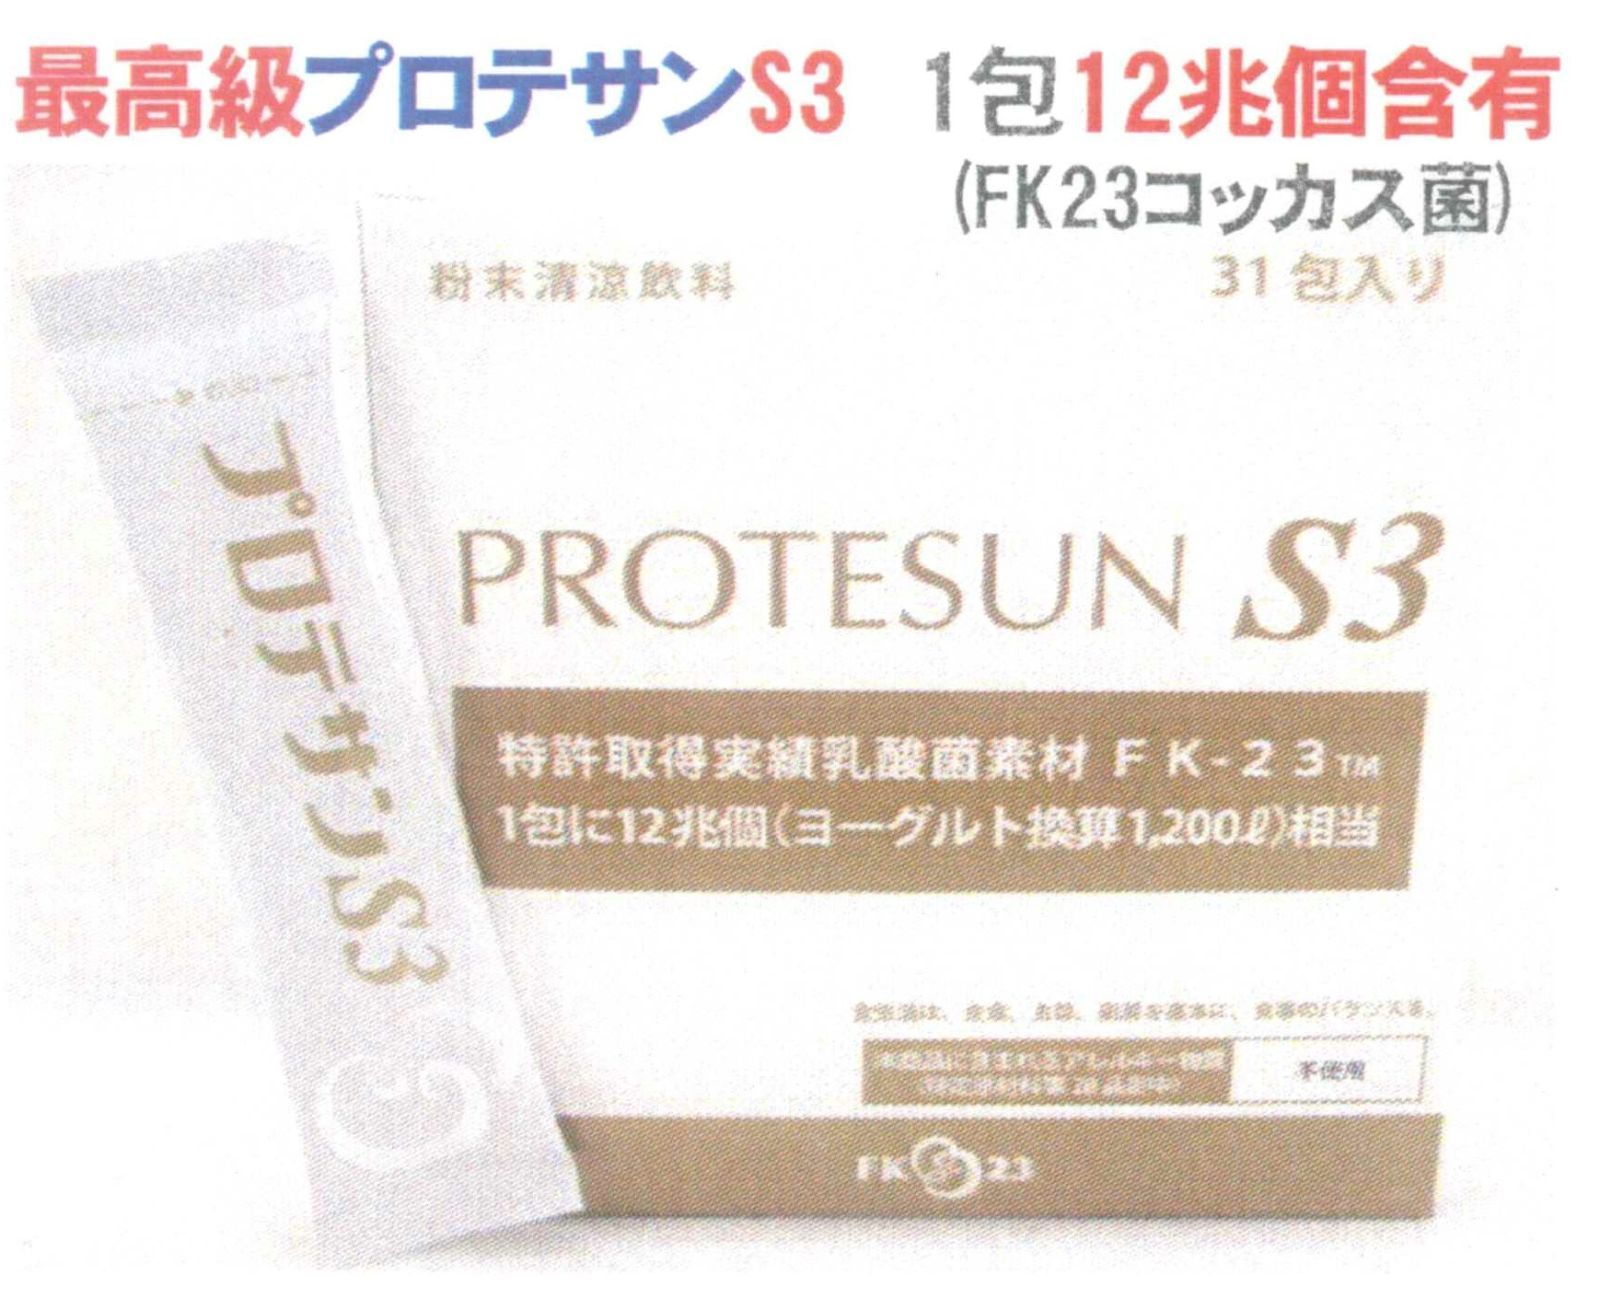 31包箱×2箱プロテサンS3 31包入り×2箱 腸活 乳酸菌